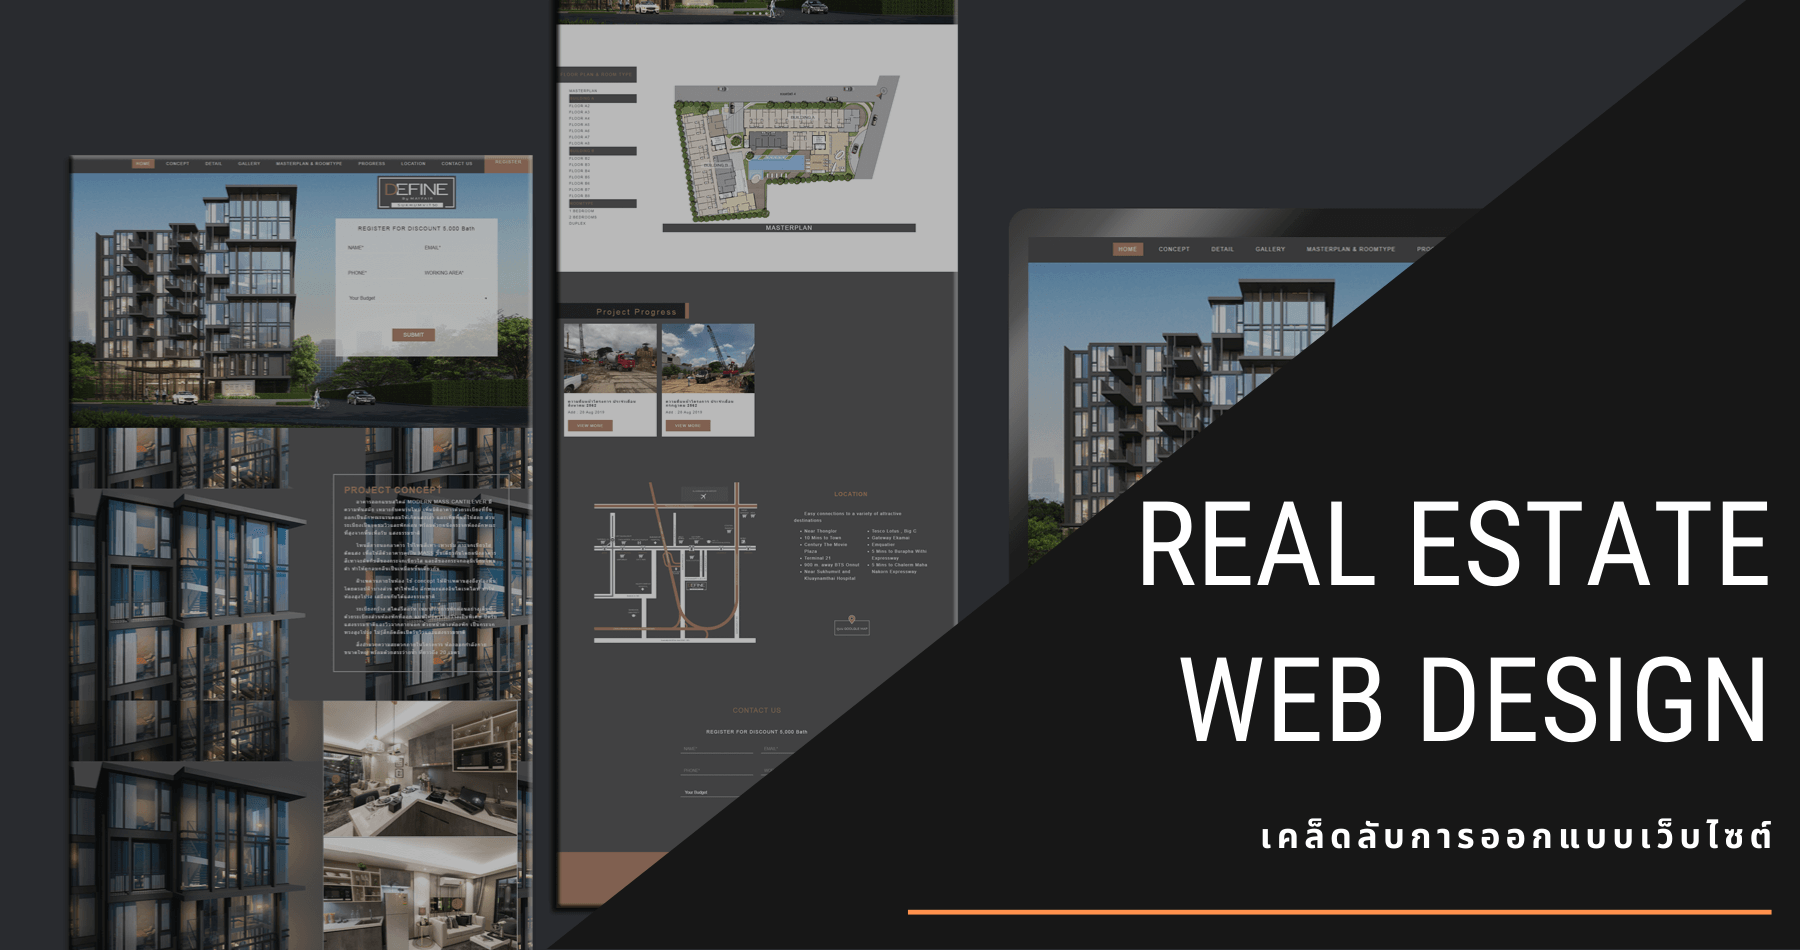 Real Estate Web Design | เคล็ดลับการออกแบบเว็บไซต์